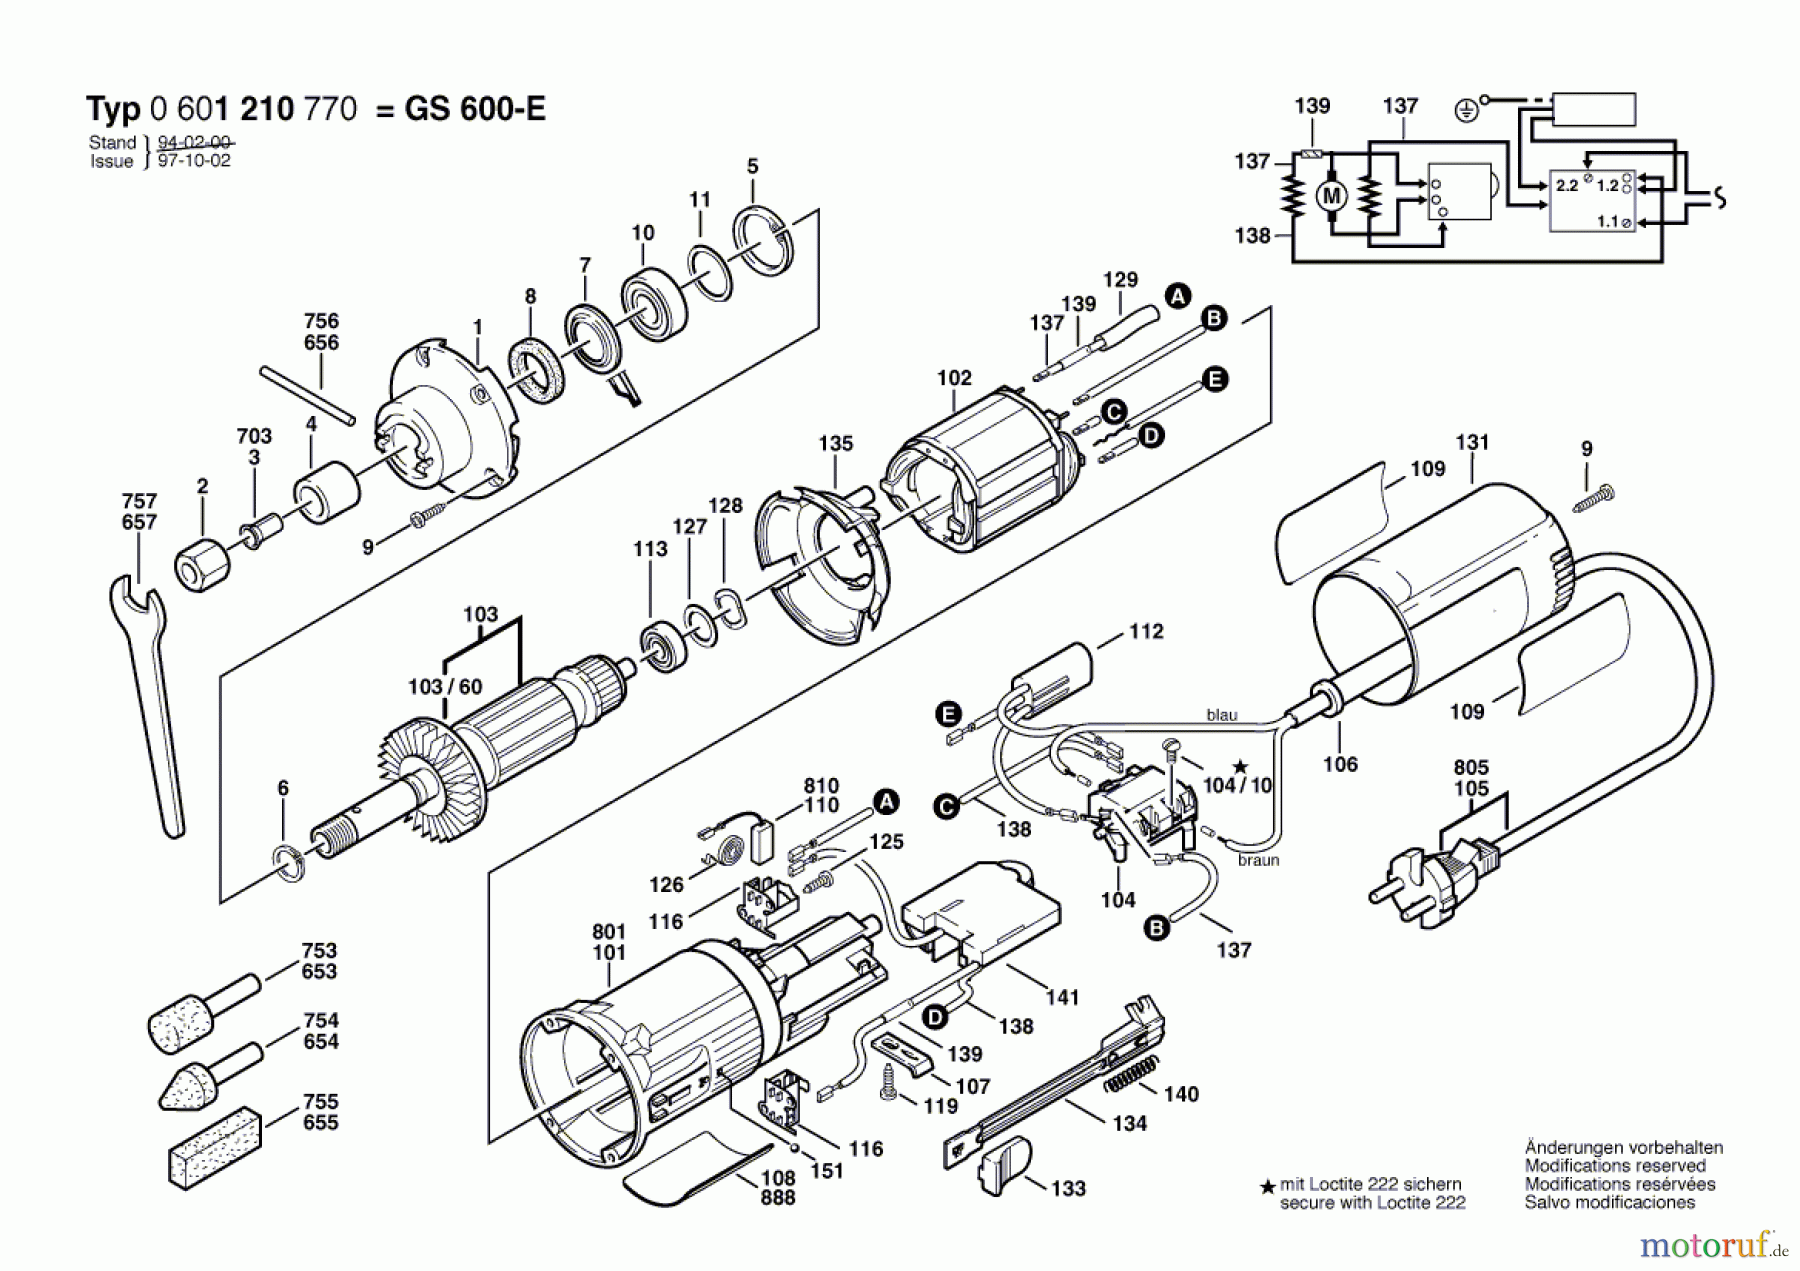  Bosch Werkzeug Geradschleifer GS 600-E Seite 1